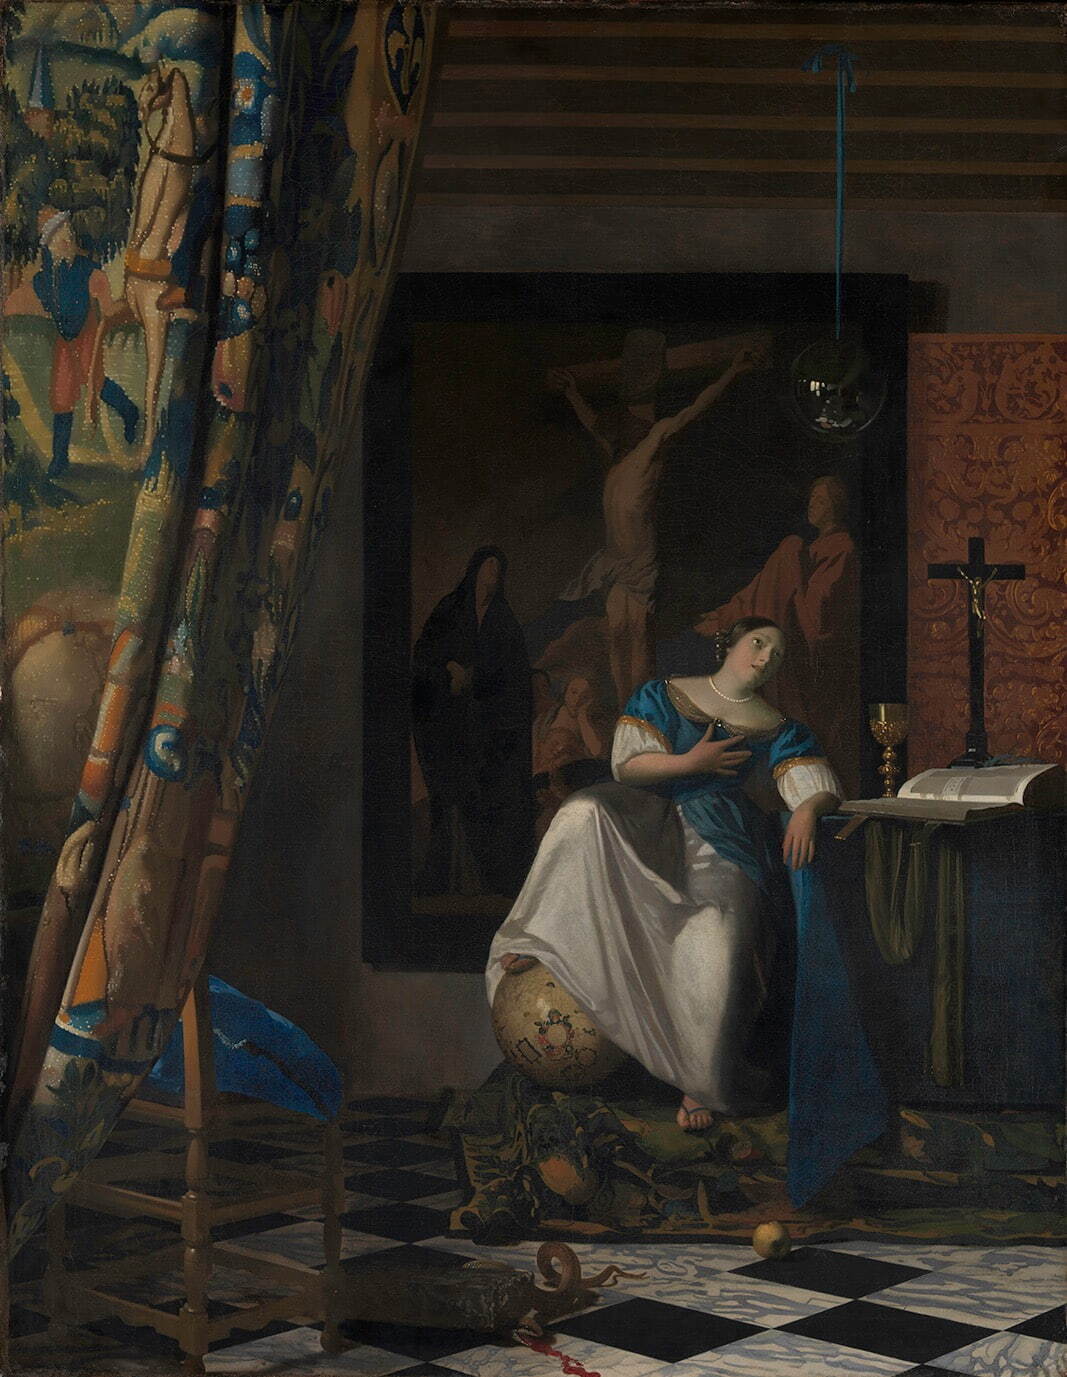 ヨハネス・フェルメール《信仰の寓意》1670-72年頃　メトロポリタン美術館
Lent by The Metropolitan Museum of Art, The Friedsam Collection, Bequest of Michael Friedsam, 1931